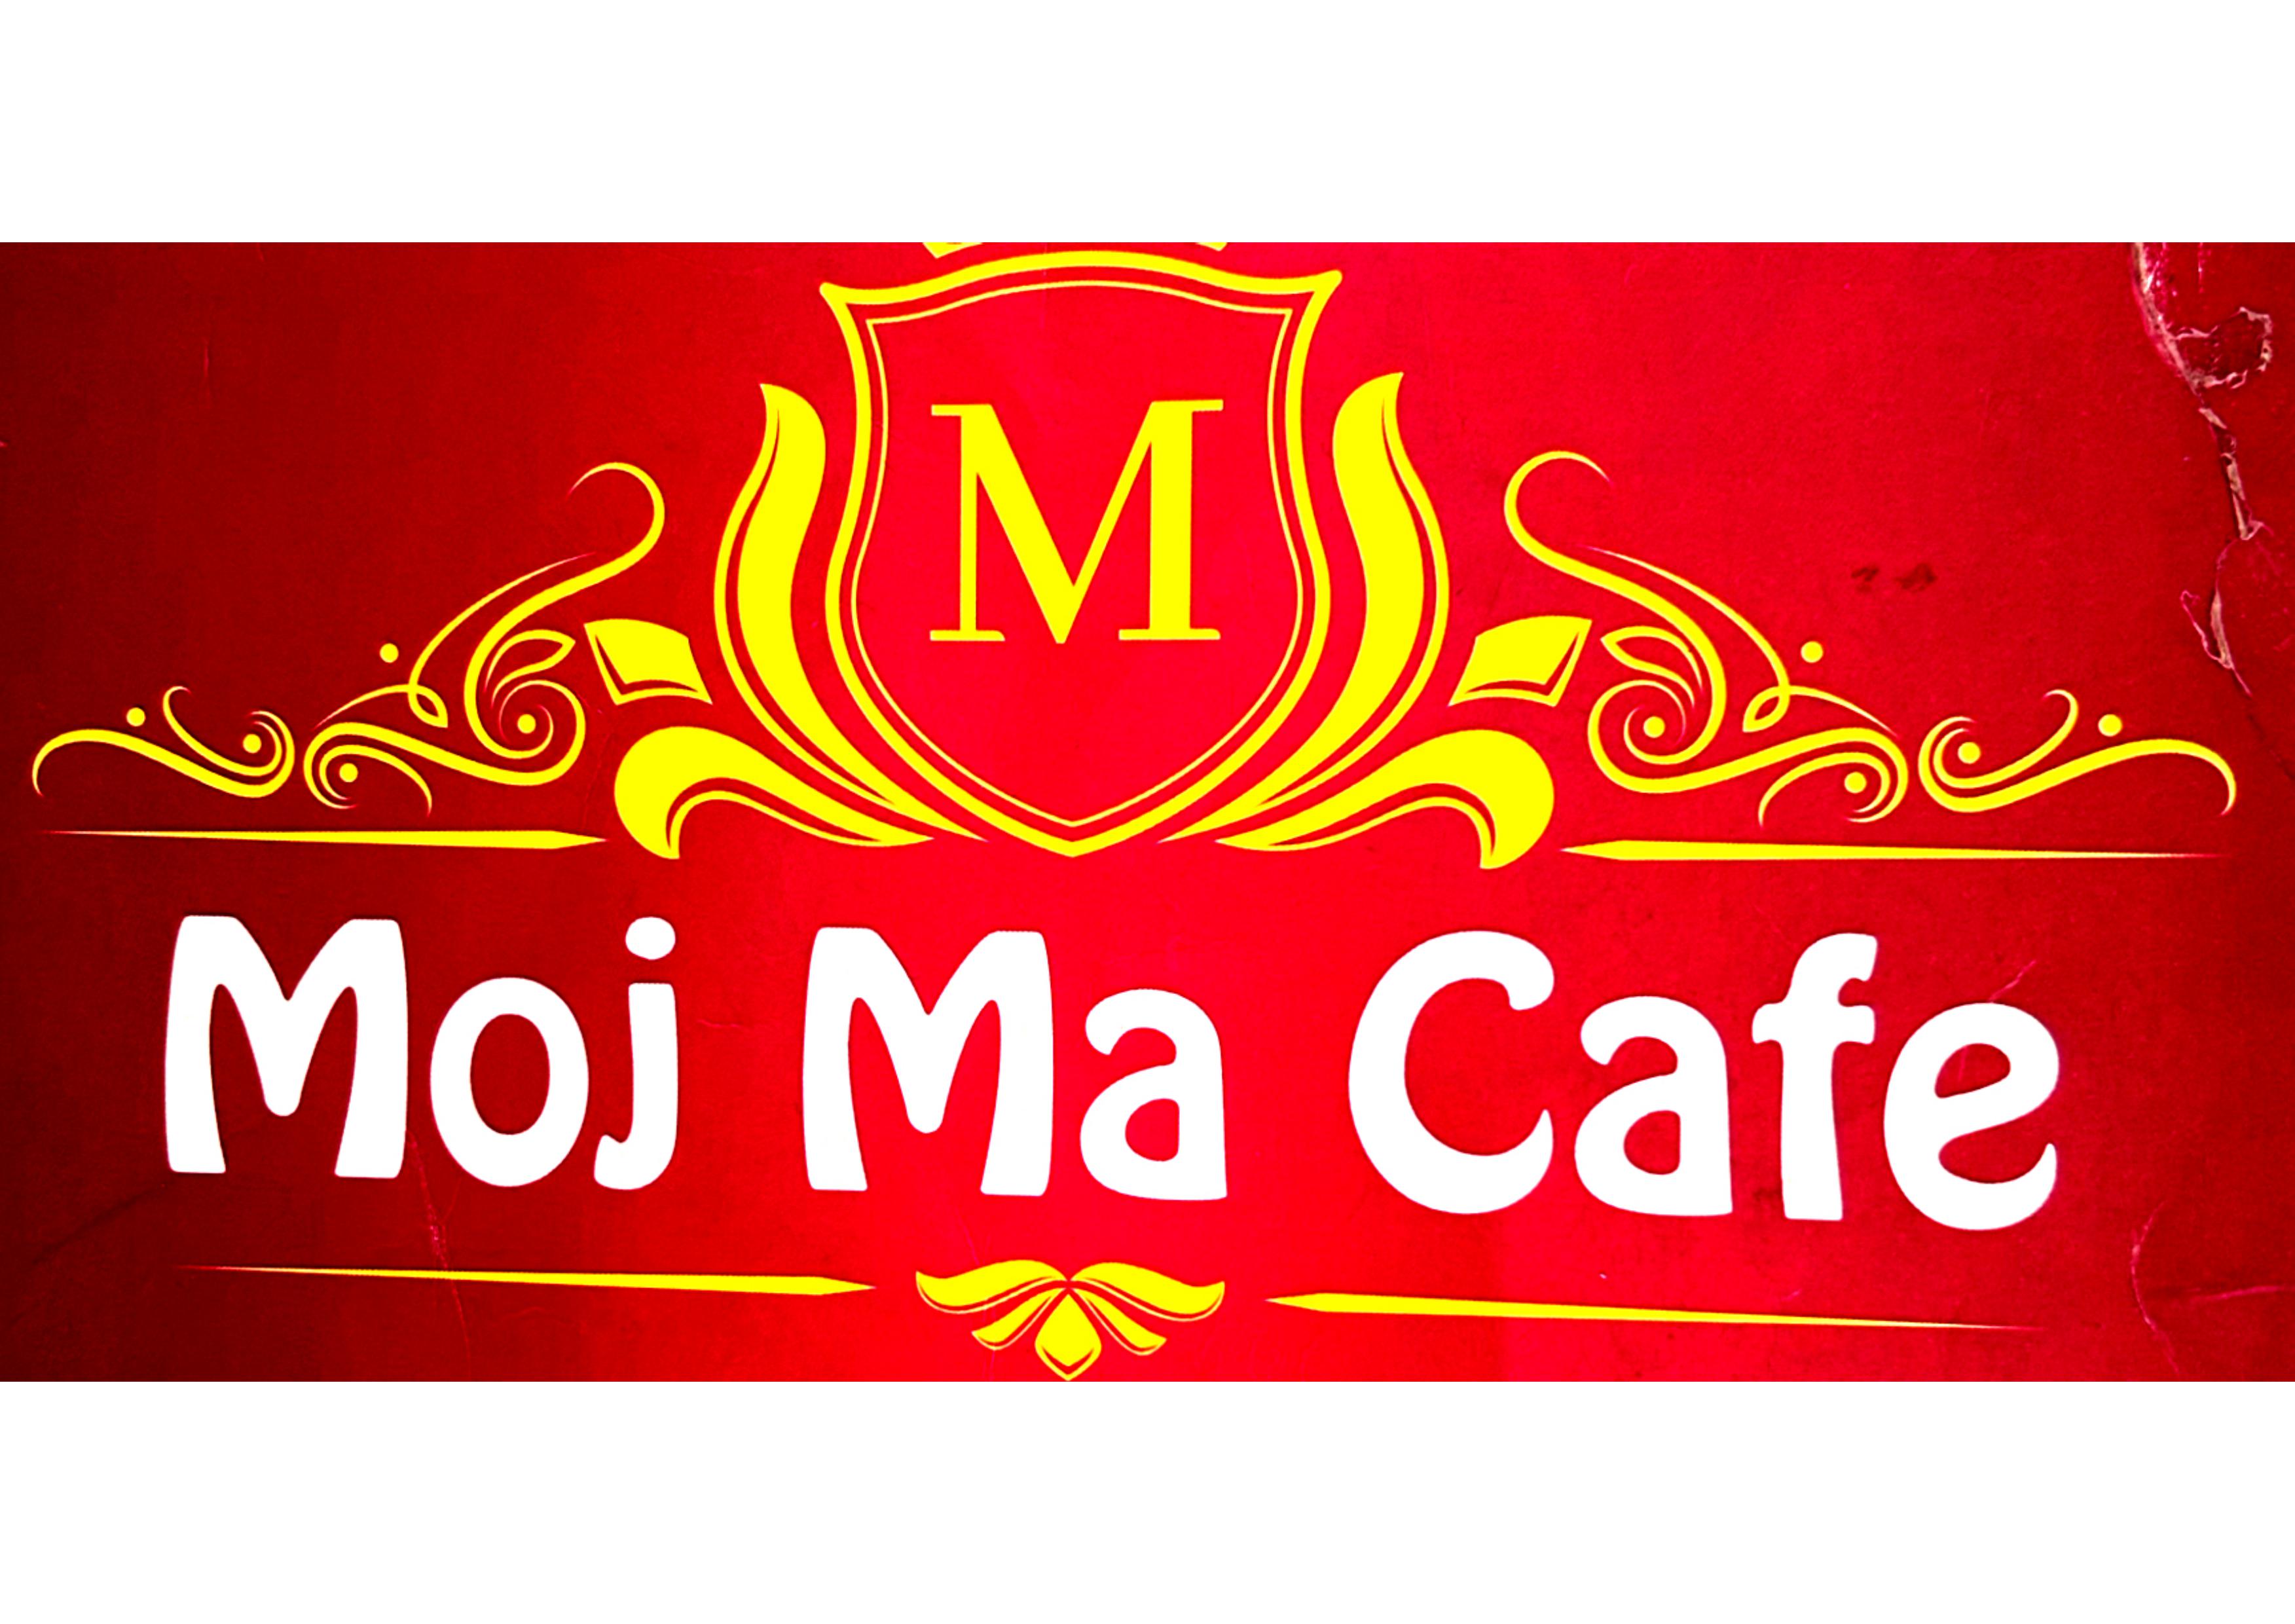 Moj Ma Cafe